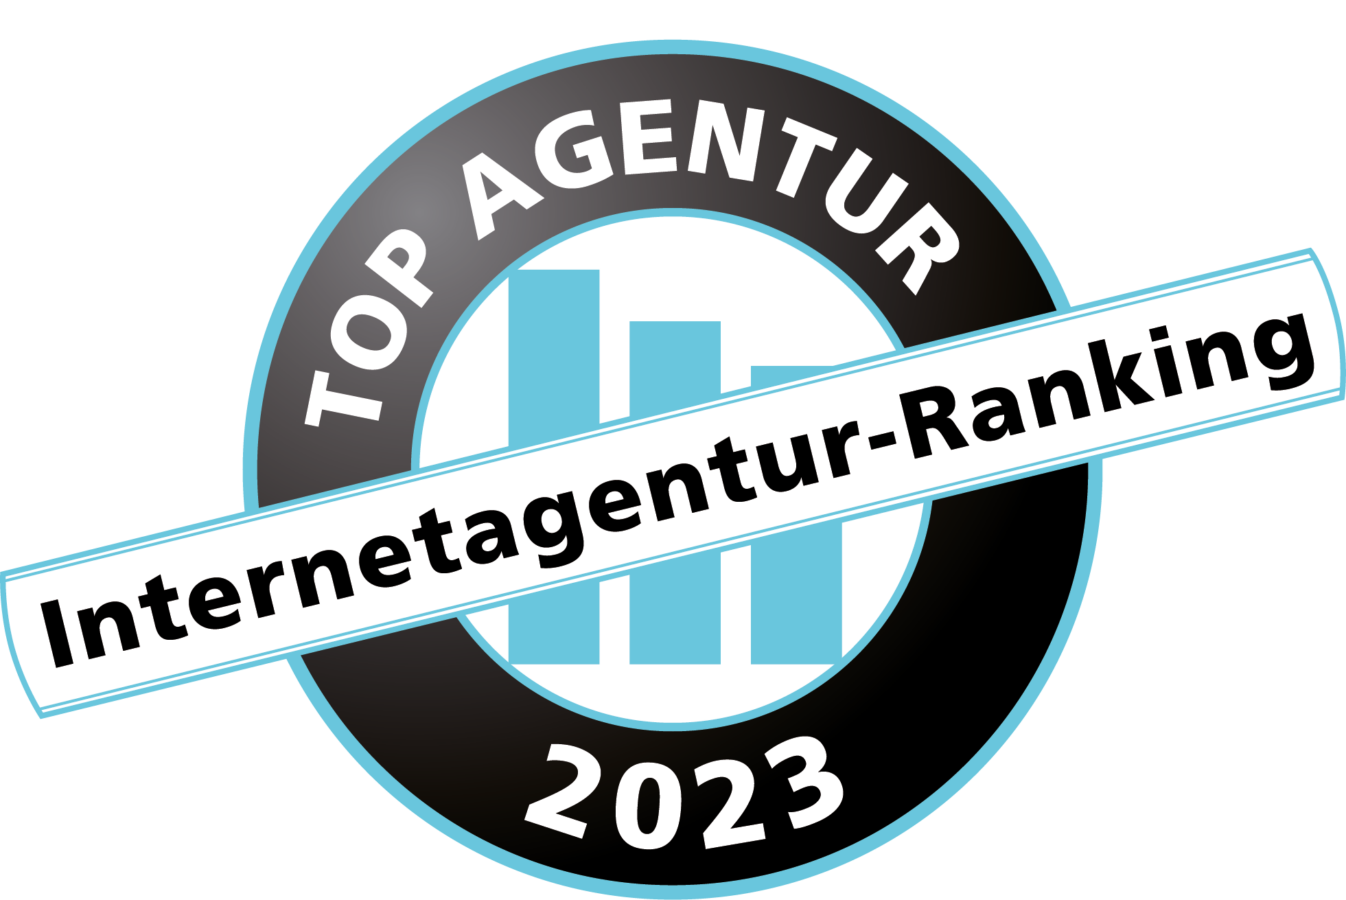 Bild vom Logo "Internetagentur-Ranking 2022"